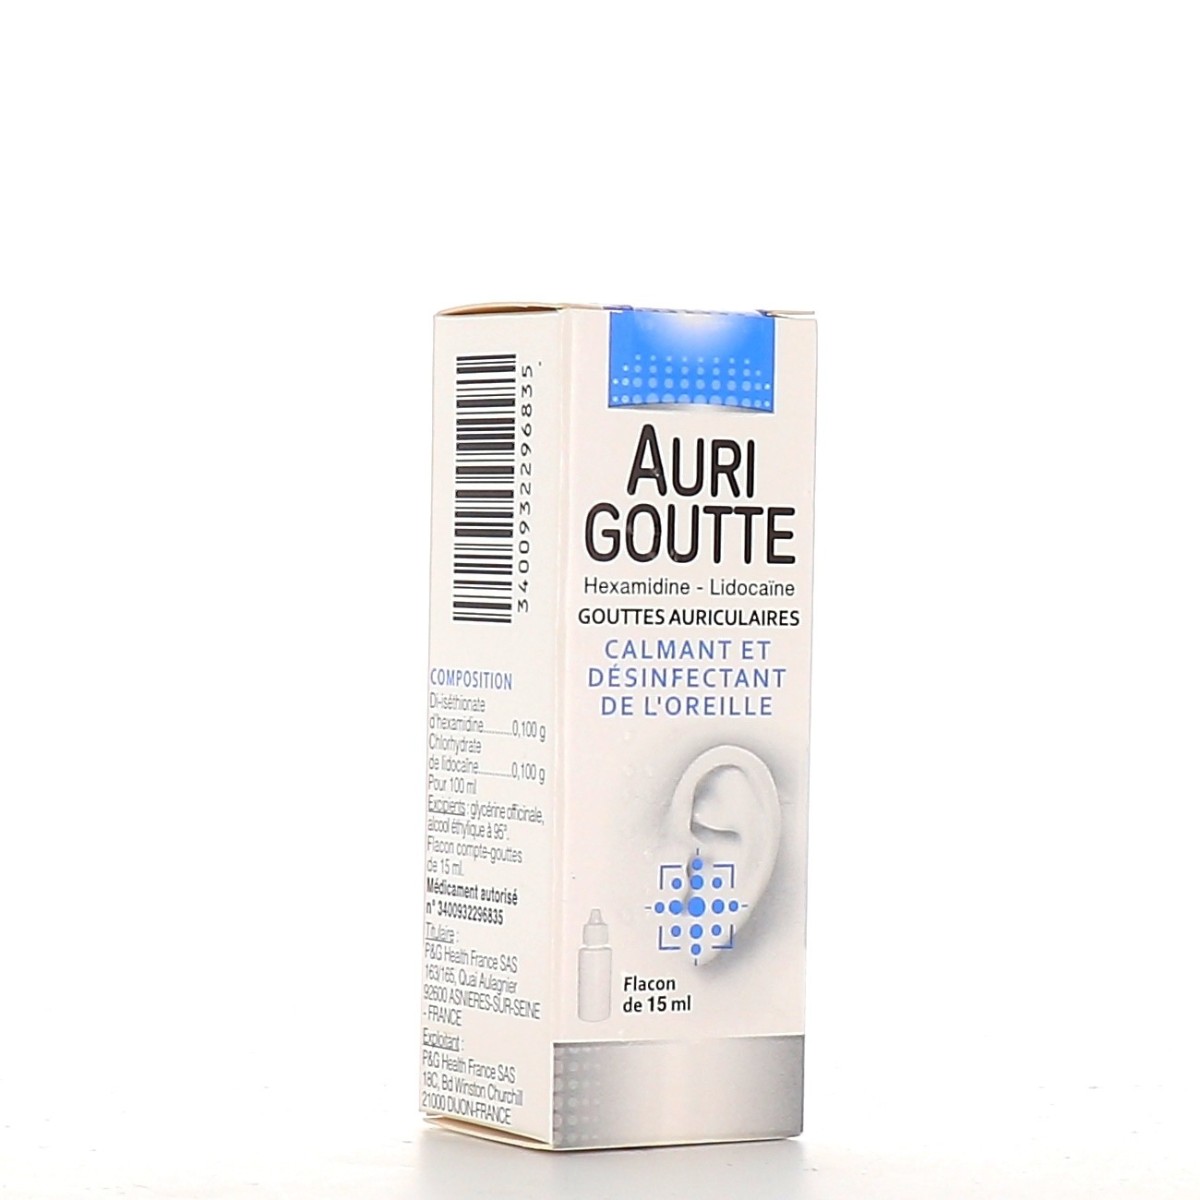 aurigoutte-gouttes-auriculaires-procter et gamble-3-1631198262.jpg